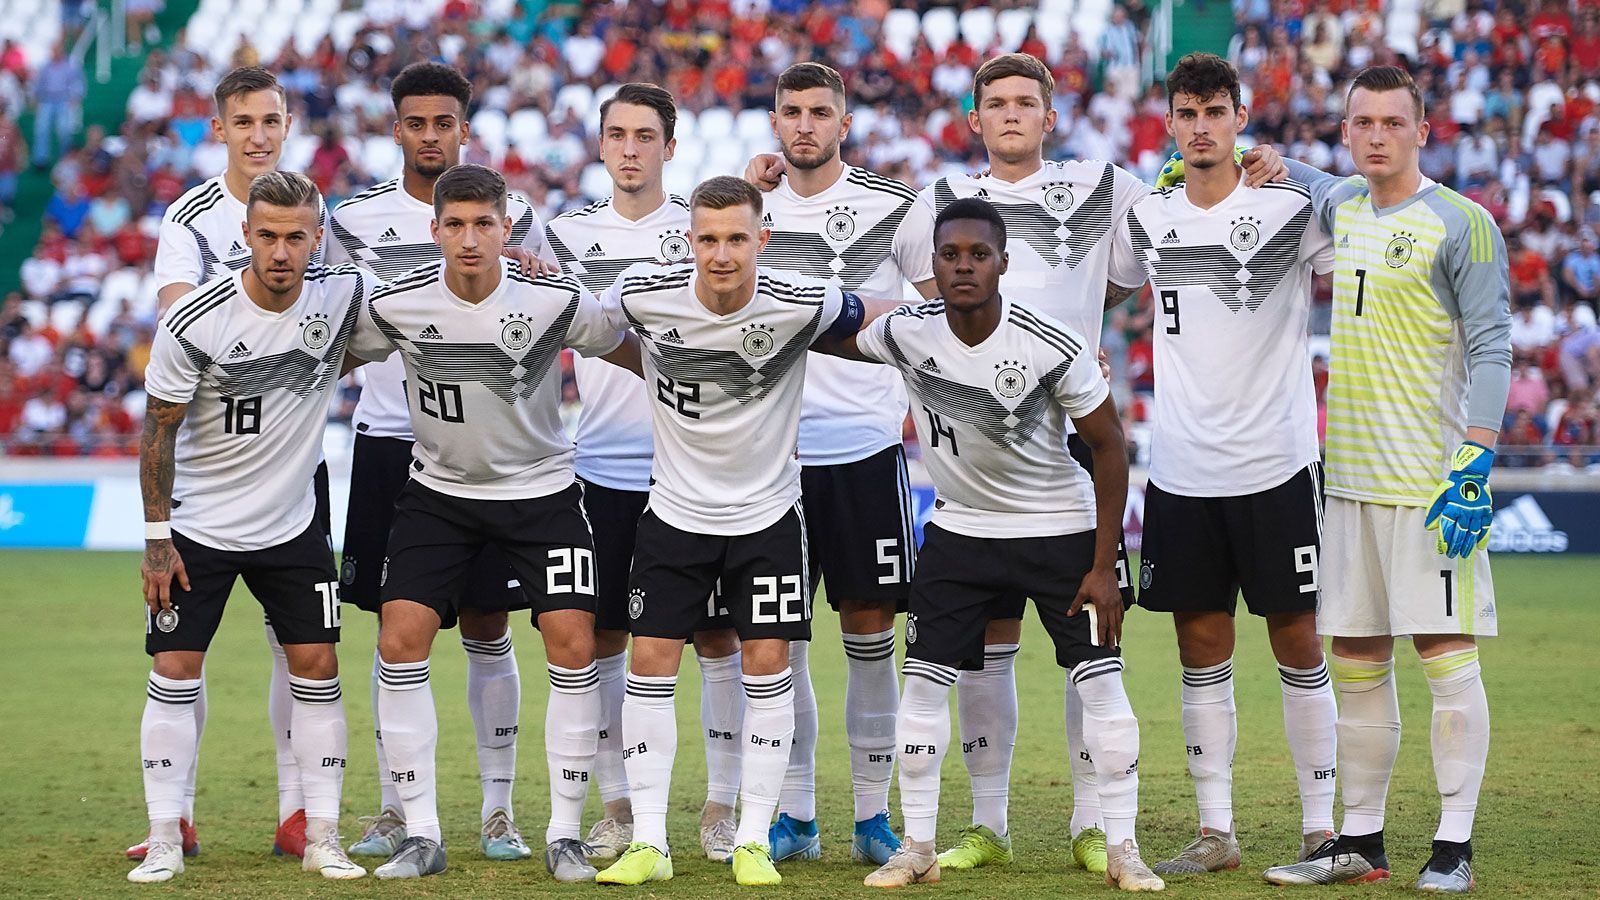 
                <strong>4. Fakt: Ordentliche Bilanz gegen Bosnien</strong><br>
                Die Bilanz der deutschen U21 gegen Bosnien-Herzegowina sieht mittlerweile recht ordentlich aus. Das Duell in der Hinrunde der aktuellen EM-Qualifikation konnte Deutschland im Oktober 2019 auswärts mit 2:0 gewinnen und damit den zweiten Sieg im vierten Aufeinandertreffen feiern. Die Duelle zuvor verliefen vor allem torreich. Im Herbst 2012 gab es im Rahmen der EM-Qualifikation ein 4:4-Unentschieden zwischen Bosnien und Deutschland, das erste Duell gewann Deutschland damals mit 3:0. Einziger Ausreißer nach unten aus deutscher Sicht: die peinliche 1:5-Klatsche im Oktober 2002 beim U21-Freundschaftsspiel in Bosnien. Dabei standen damals in der Anfangsformation des DFB-Teams spätere Bundesliga-Stars wie Kevin Kuranyi, Andreas Hinkel, Benjamin Lauth oder Jermaine Jones, der Deutschland früh in Führung brachte, aber in weiterer Folge mit Gelb-Rot vom Platz flog. 
              